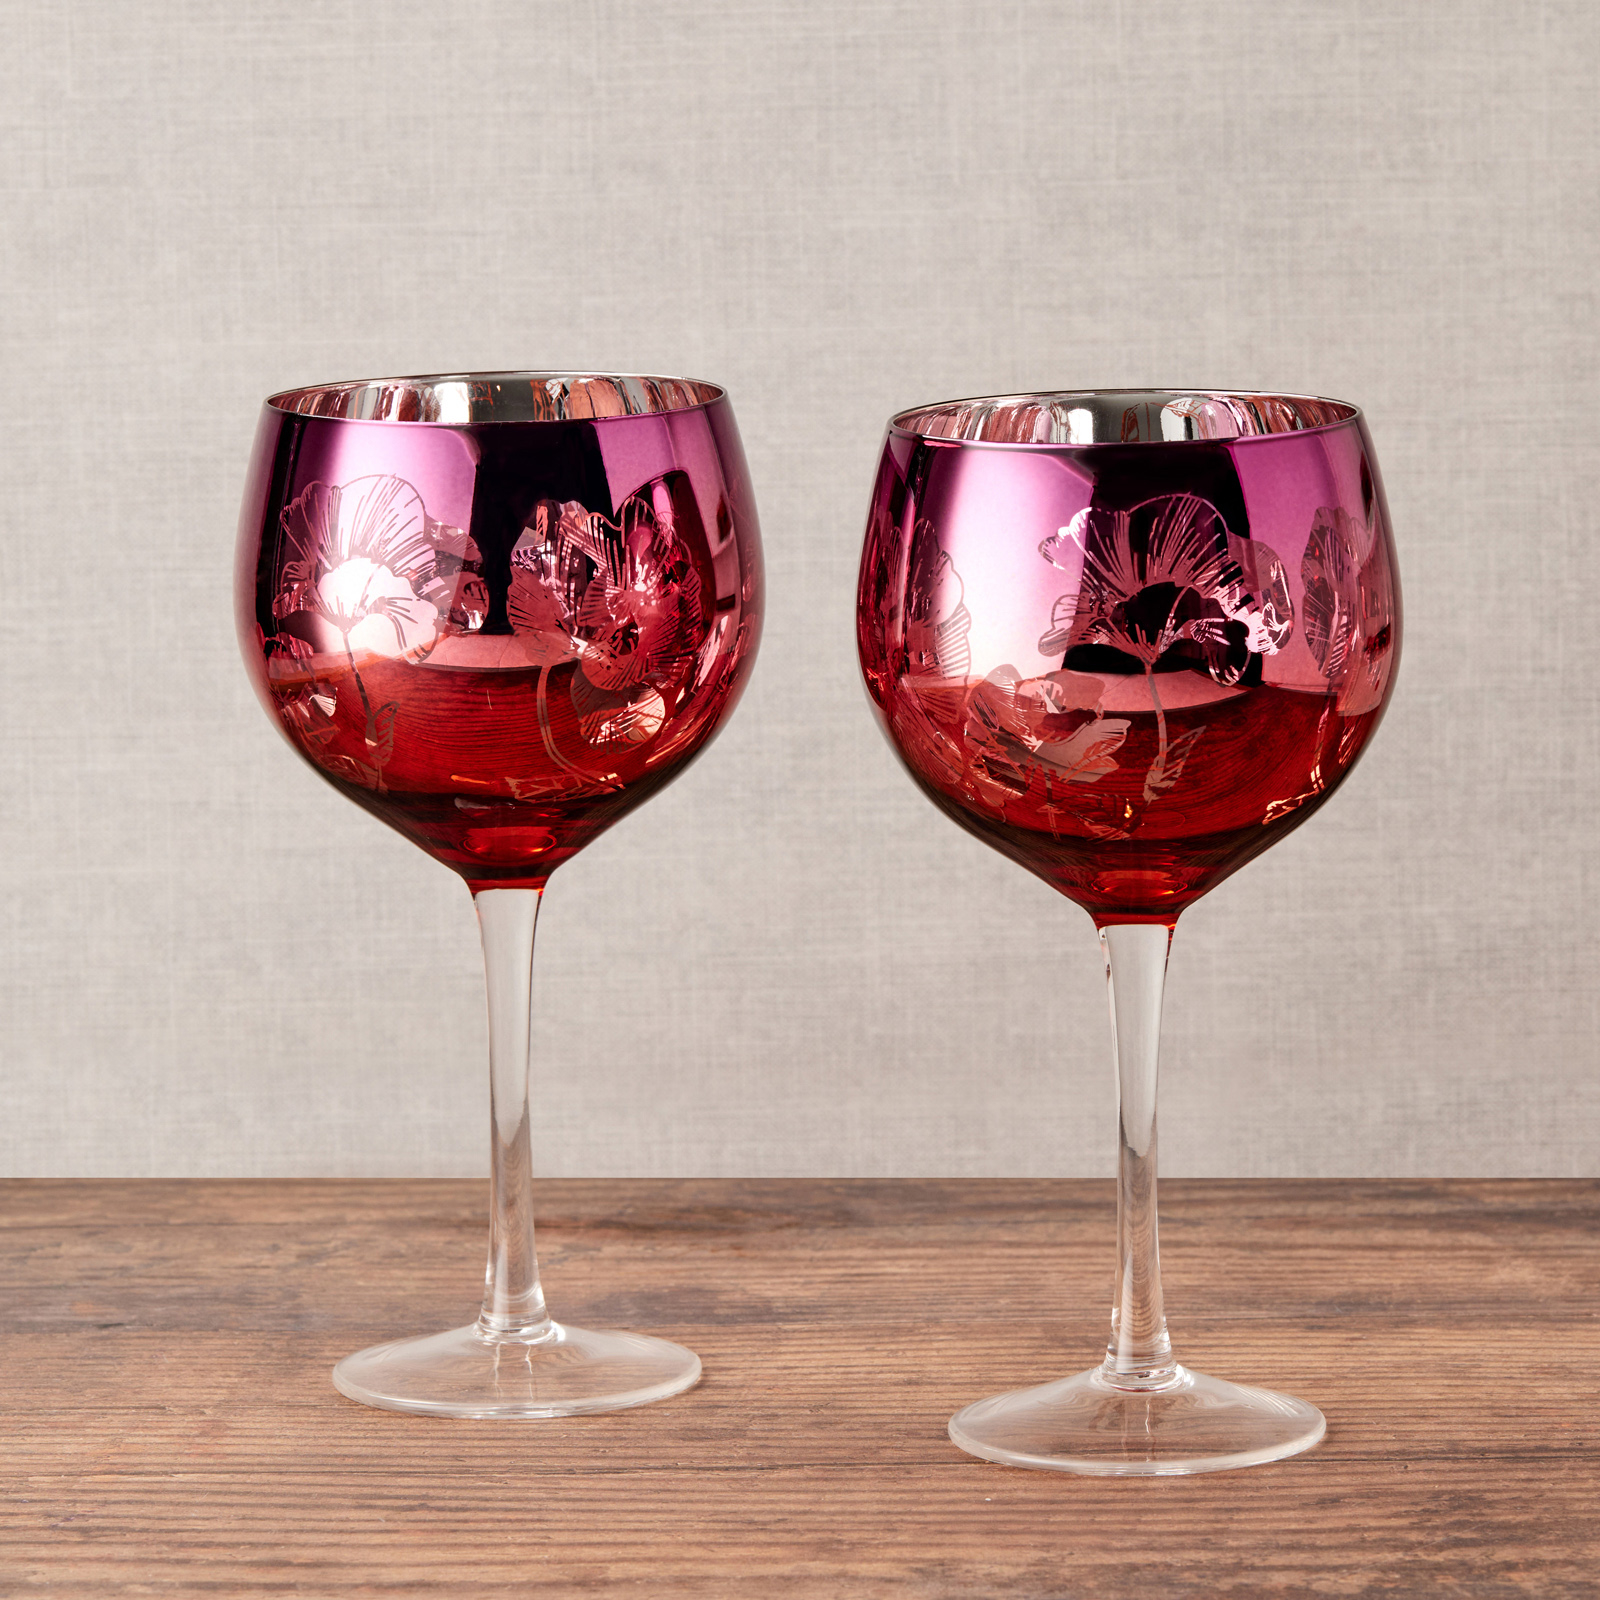 Visuel deLot de 2 verres à gin Bloom by Artland - Bloom Un décor magnifique avec un design détaillé rose, orange et argent, ces verres à gin exclusif comportent un bouquet de fleurs miroir, le tout sur un grand bol incurvé, et une tige haute pour une élégance ultime